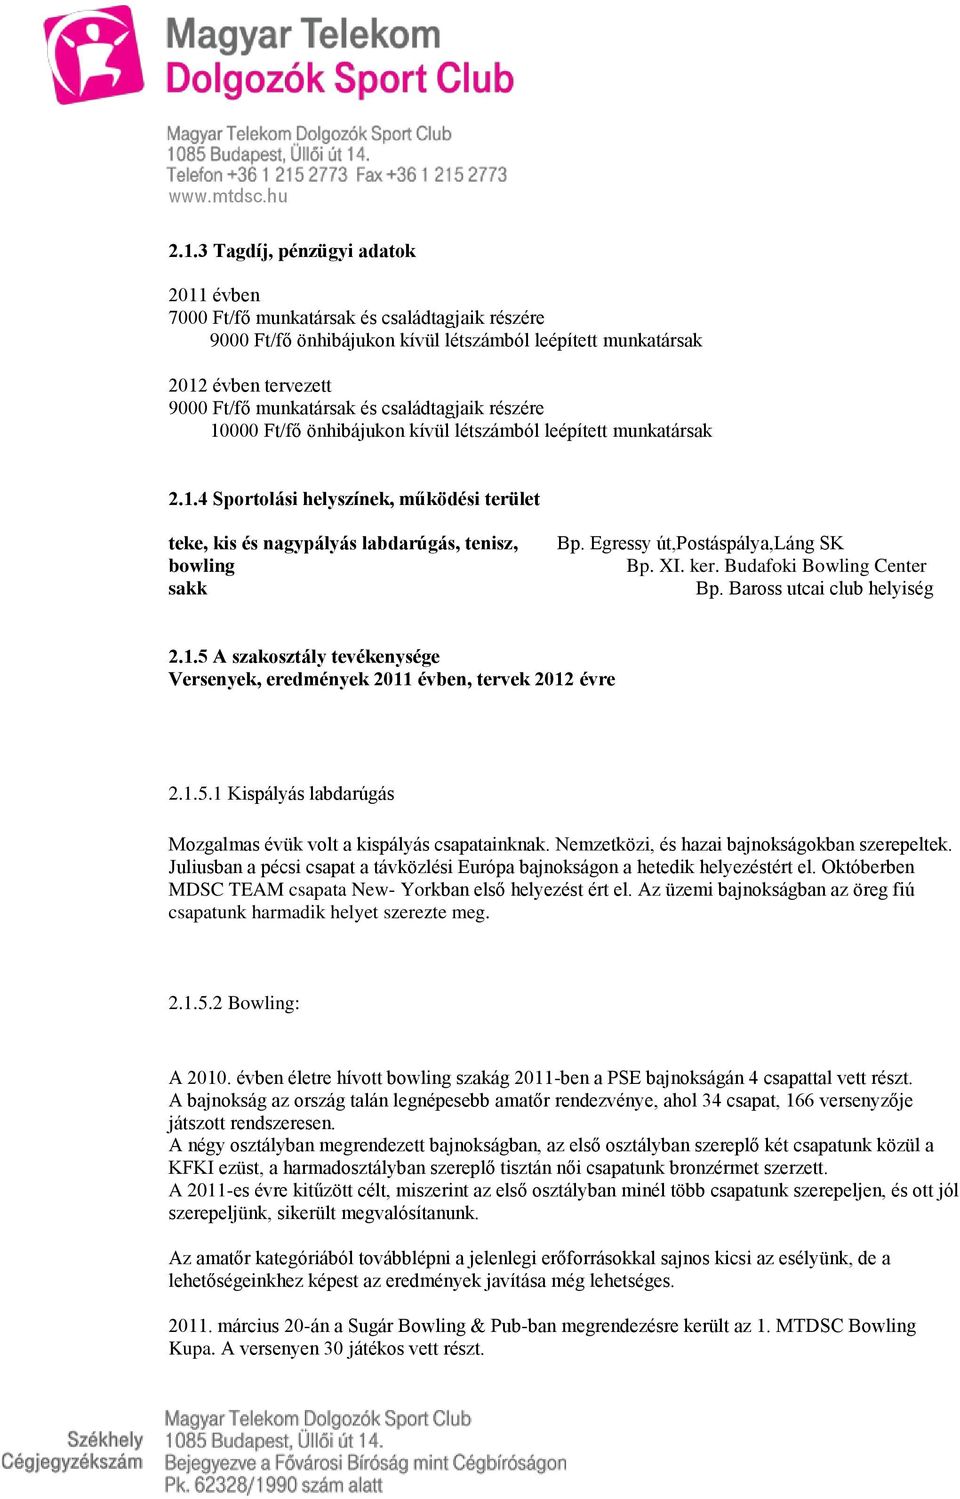 Magyar Telekom Dolgozók Sport Club Elnökségének beszámolója a Club 2011 évi  közhasznúsági tevékenységéről 2012évi tervekről - PDF Ingyenes letöltés